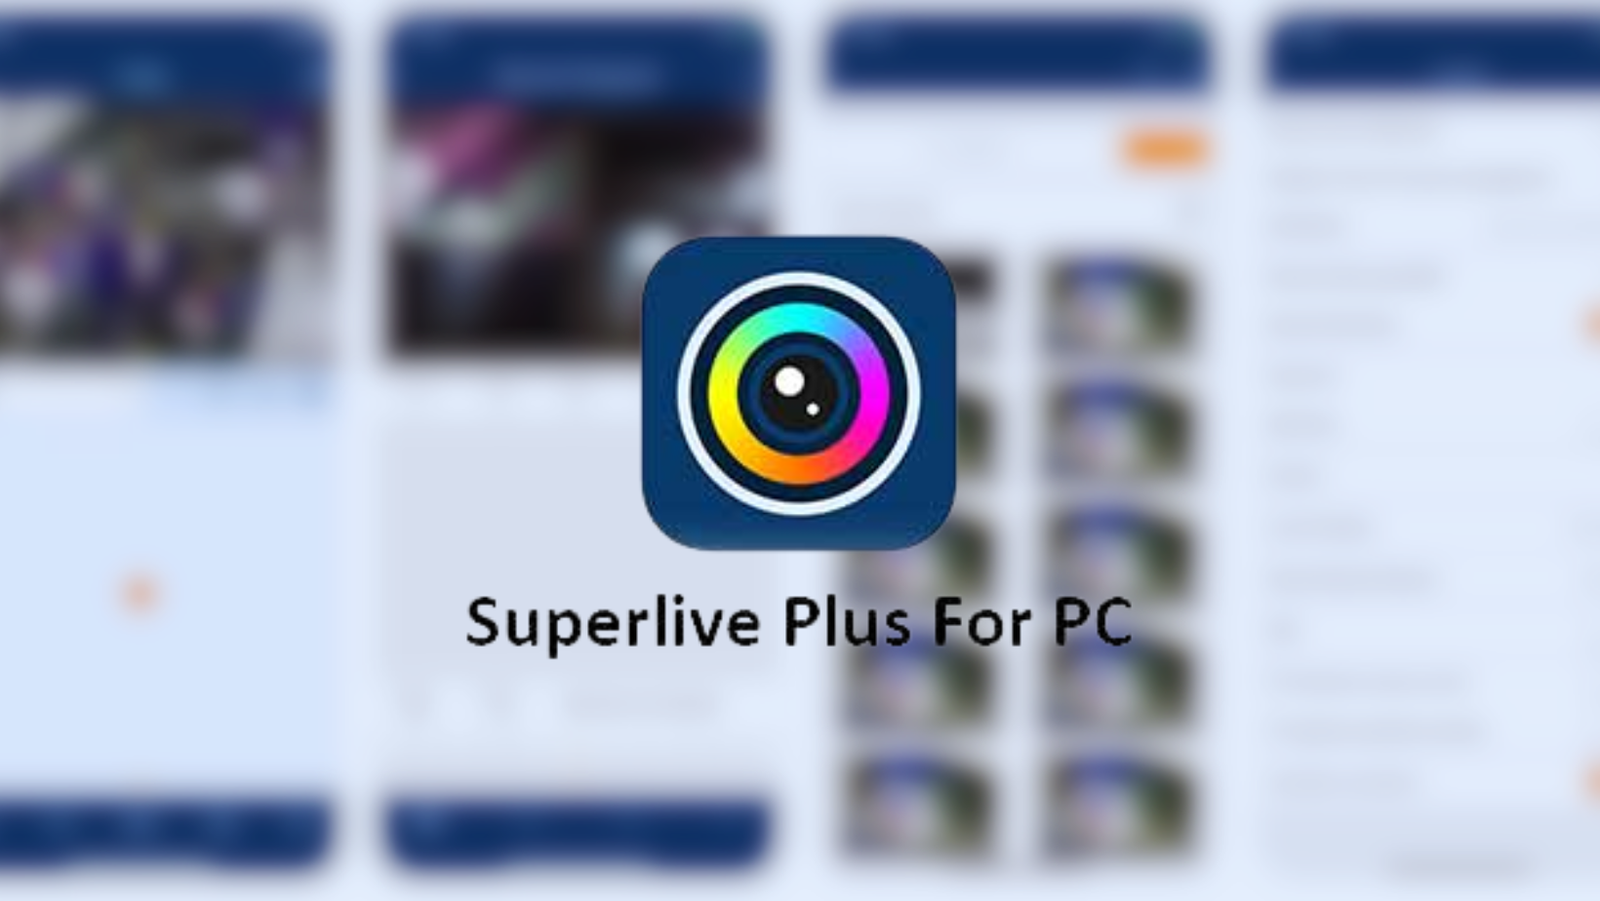 SuperLive Plus